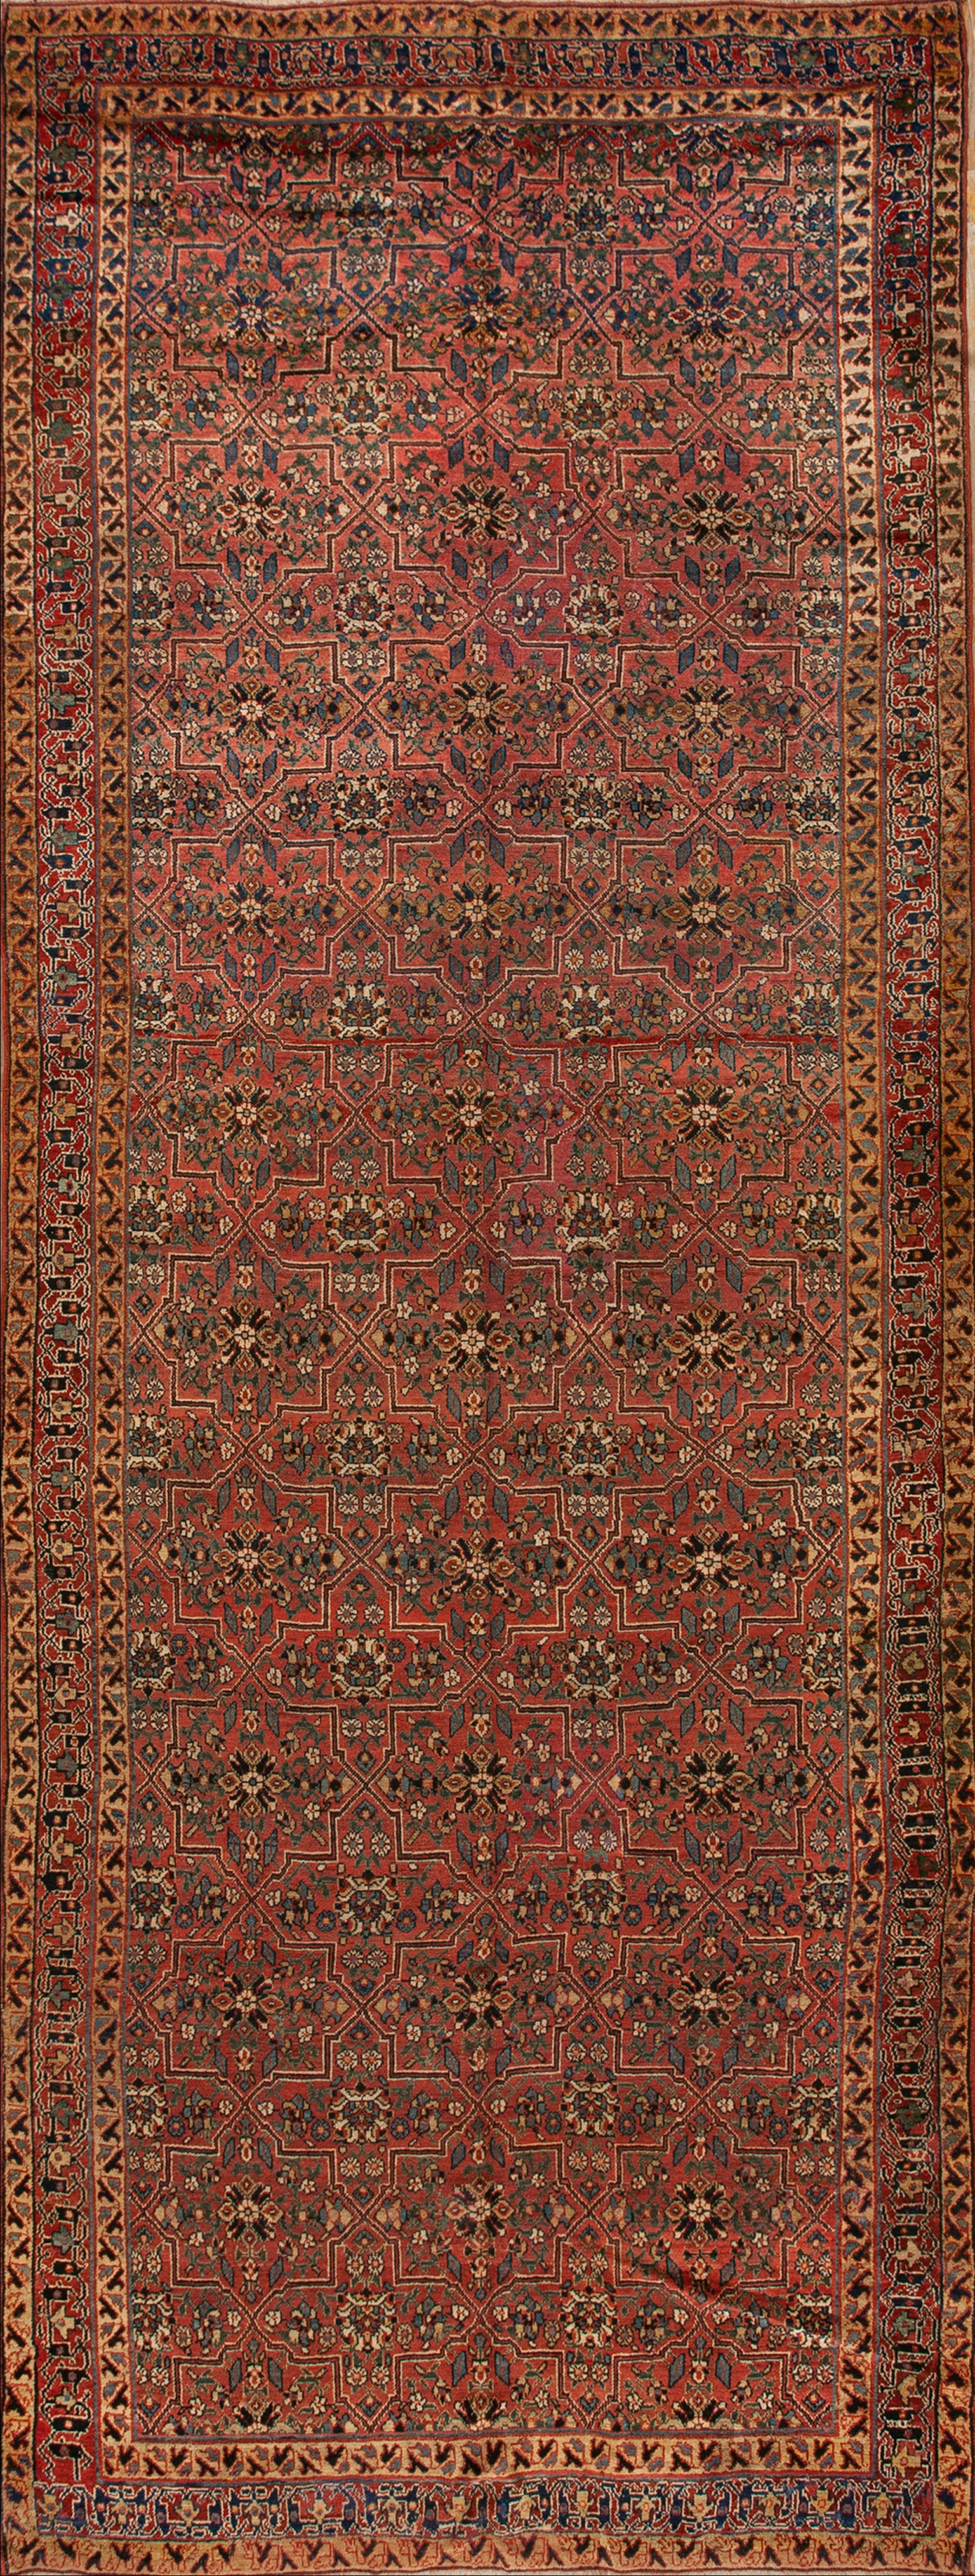 19ème siècle N.W. Tapis persan galley ( 6'6" x 17'6" - 198 x 533 )